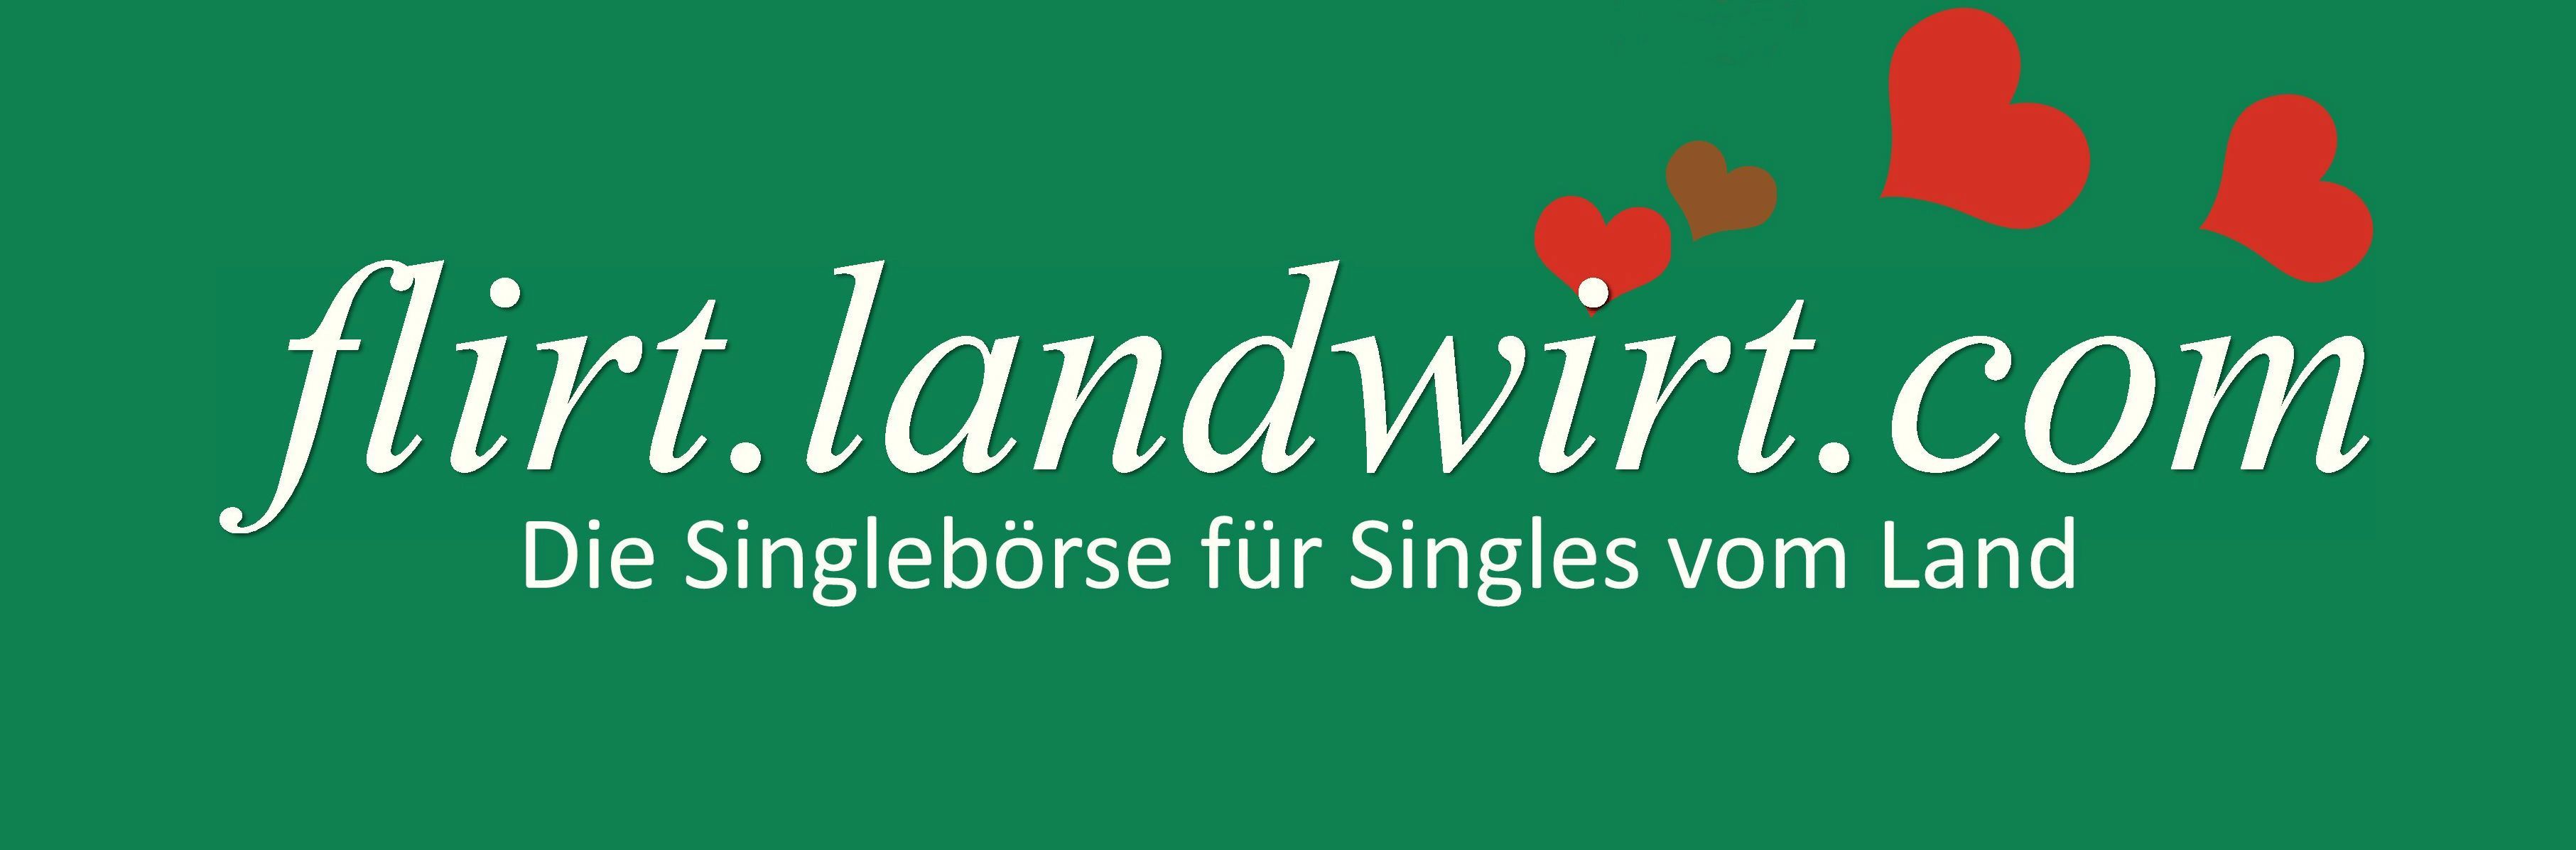 Hrtendorf singles aus kostenlos - Hausmening singles